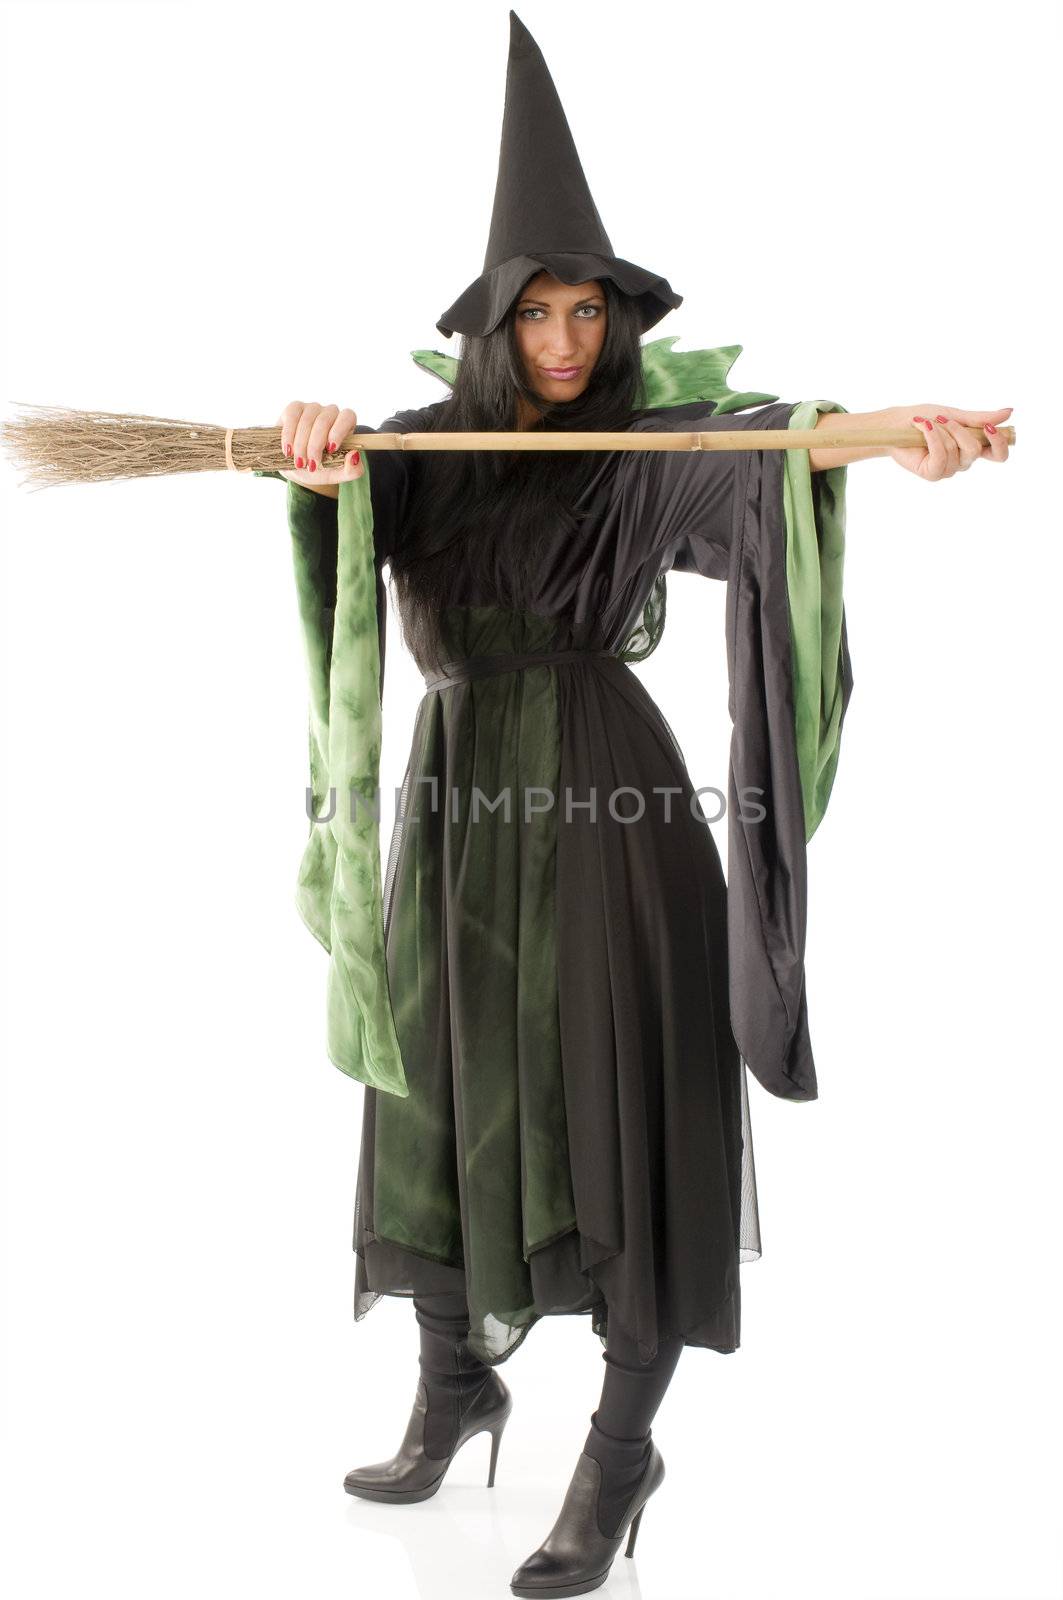 look my broom by fotoCD